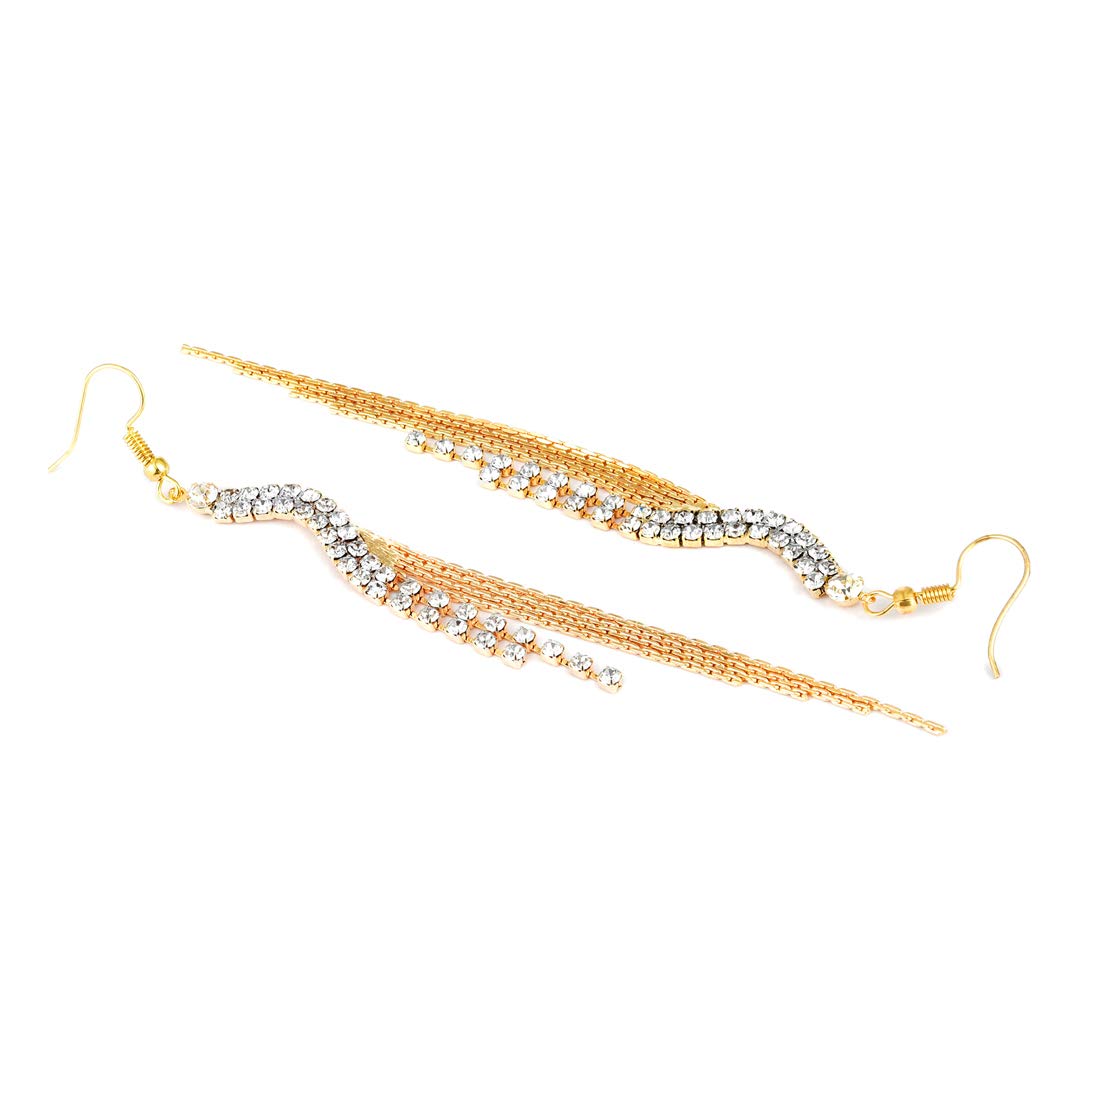 Yellow Chimes Designer Hangings Chandelier Earring for Women & Girls